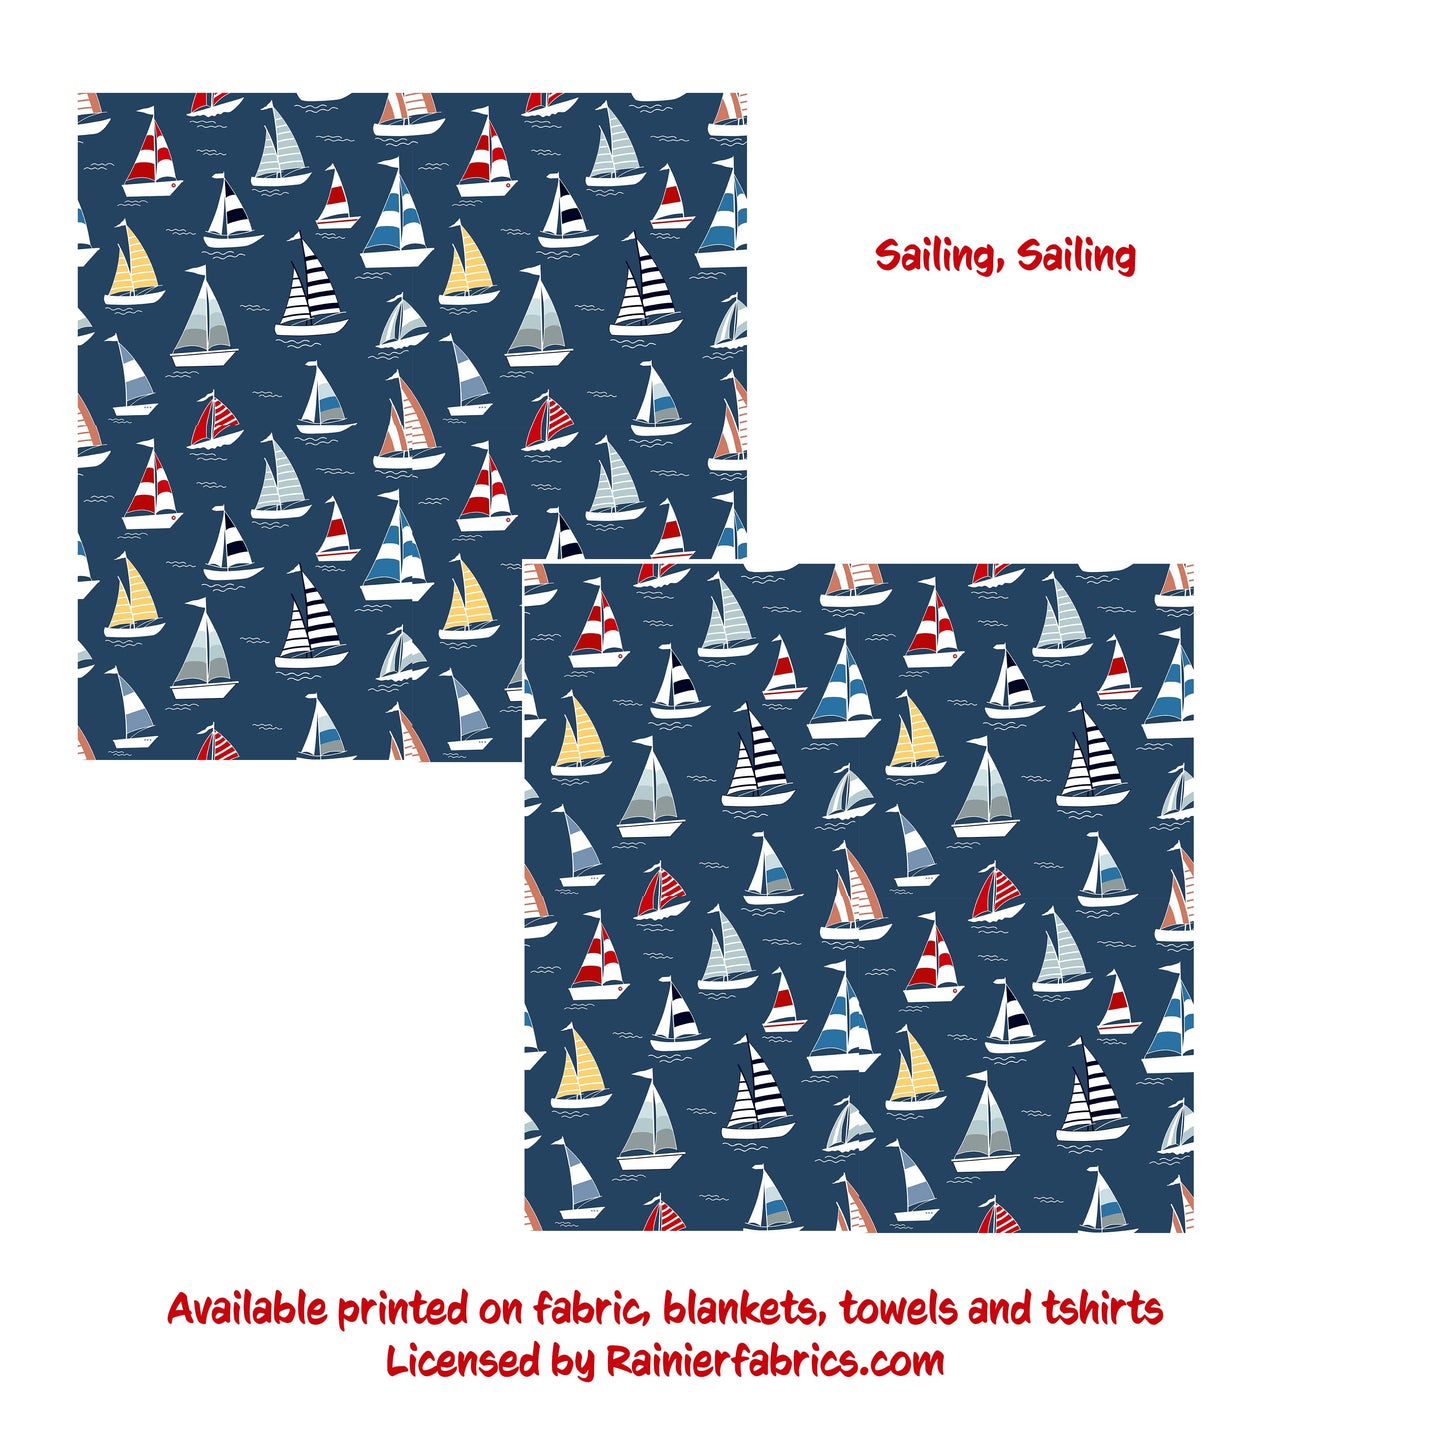 Sailing Sailing Sailboats - 2-5 day turnaround - Order by 1/2 yard; Description of bases below